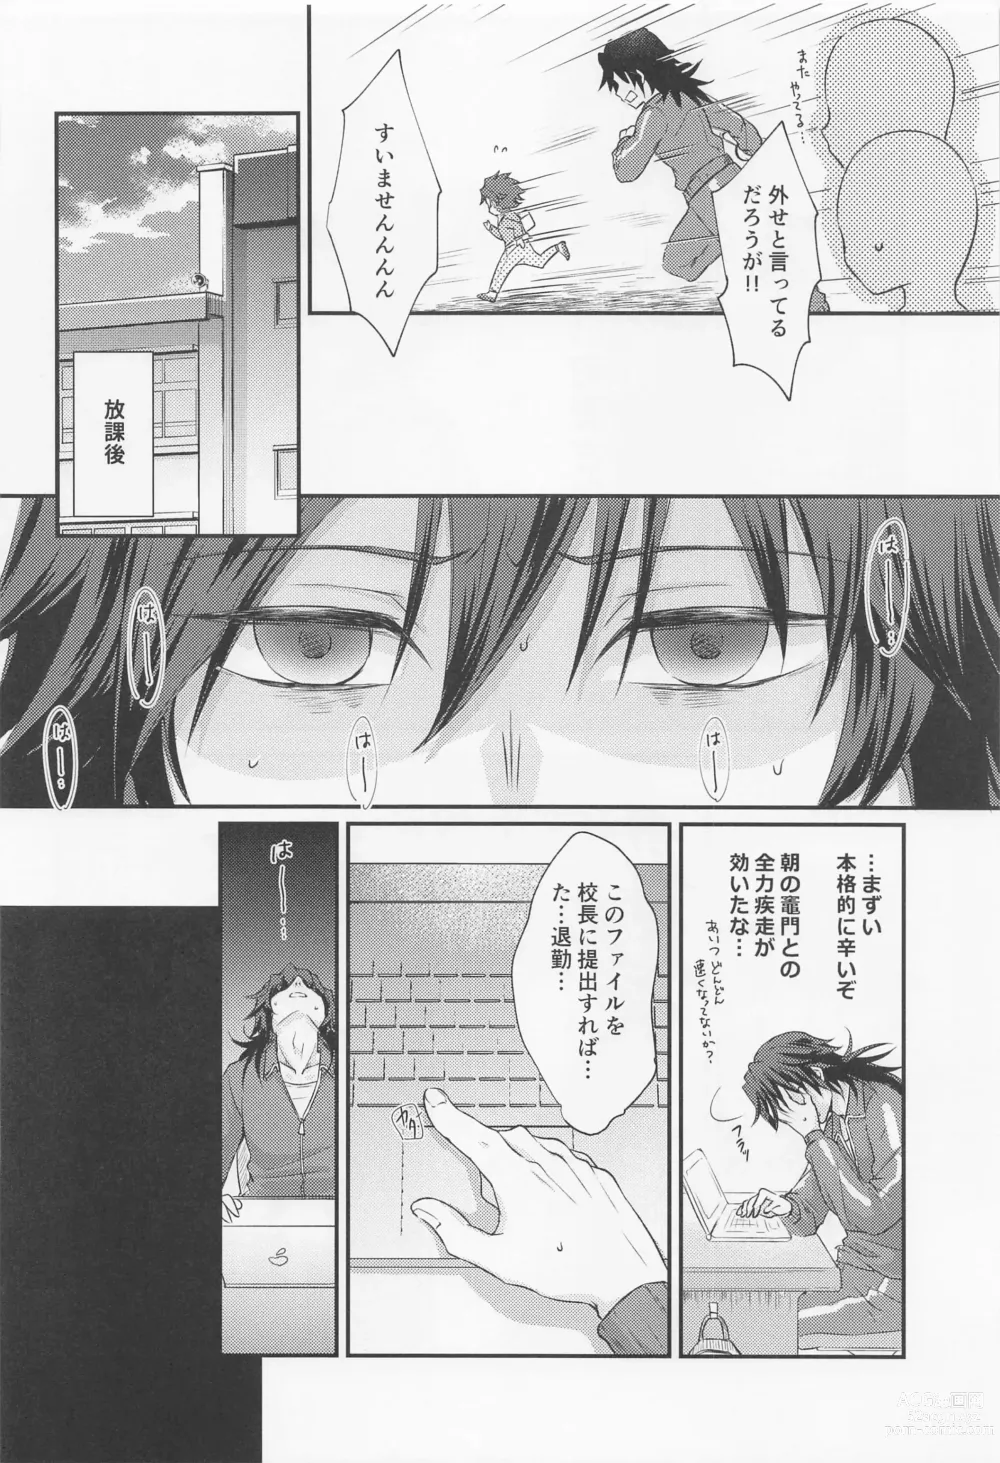 Page 7 of doujinshi Amakara Oxymoron